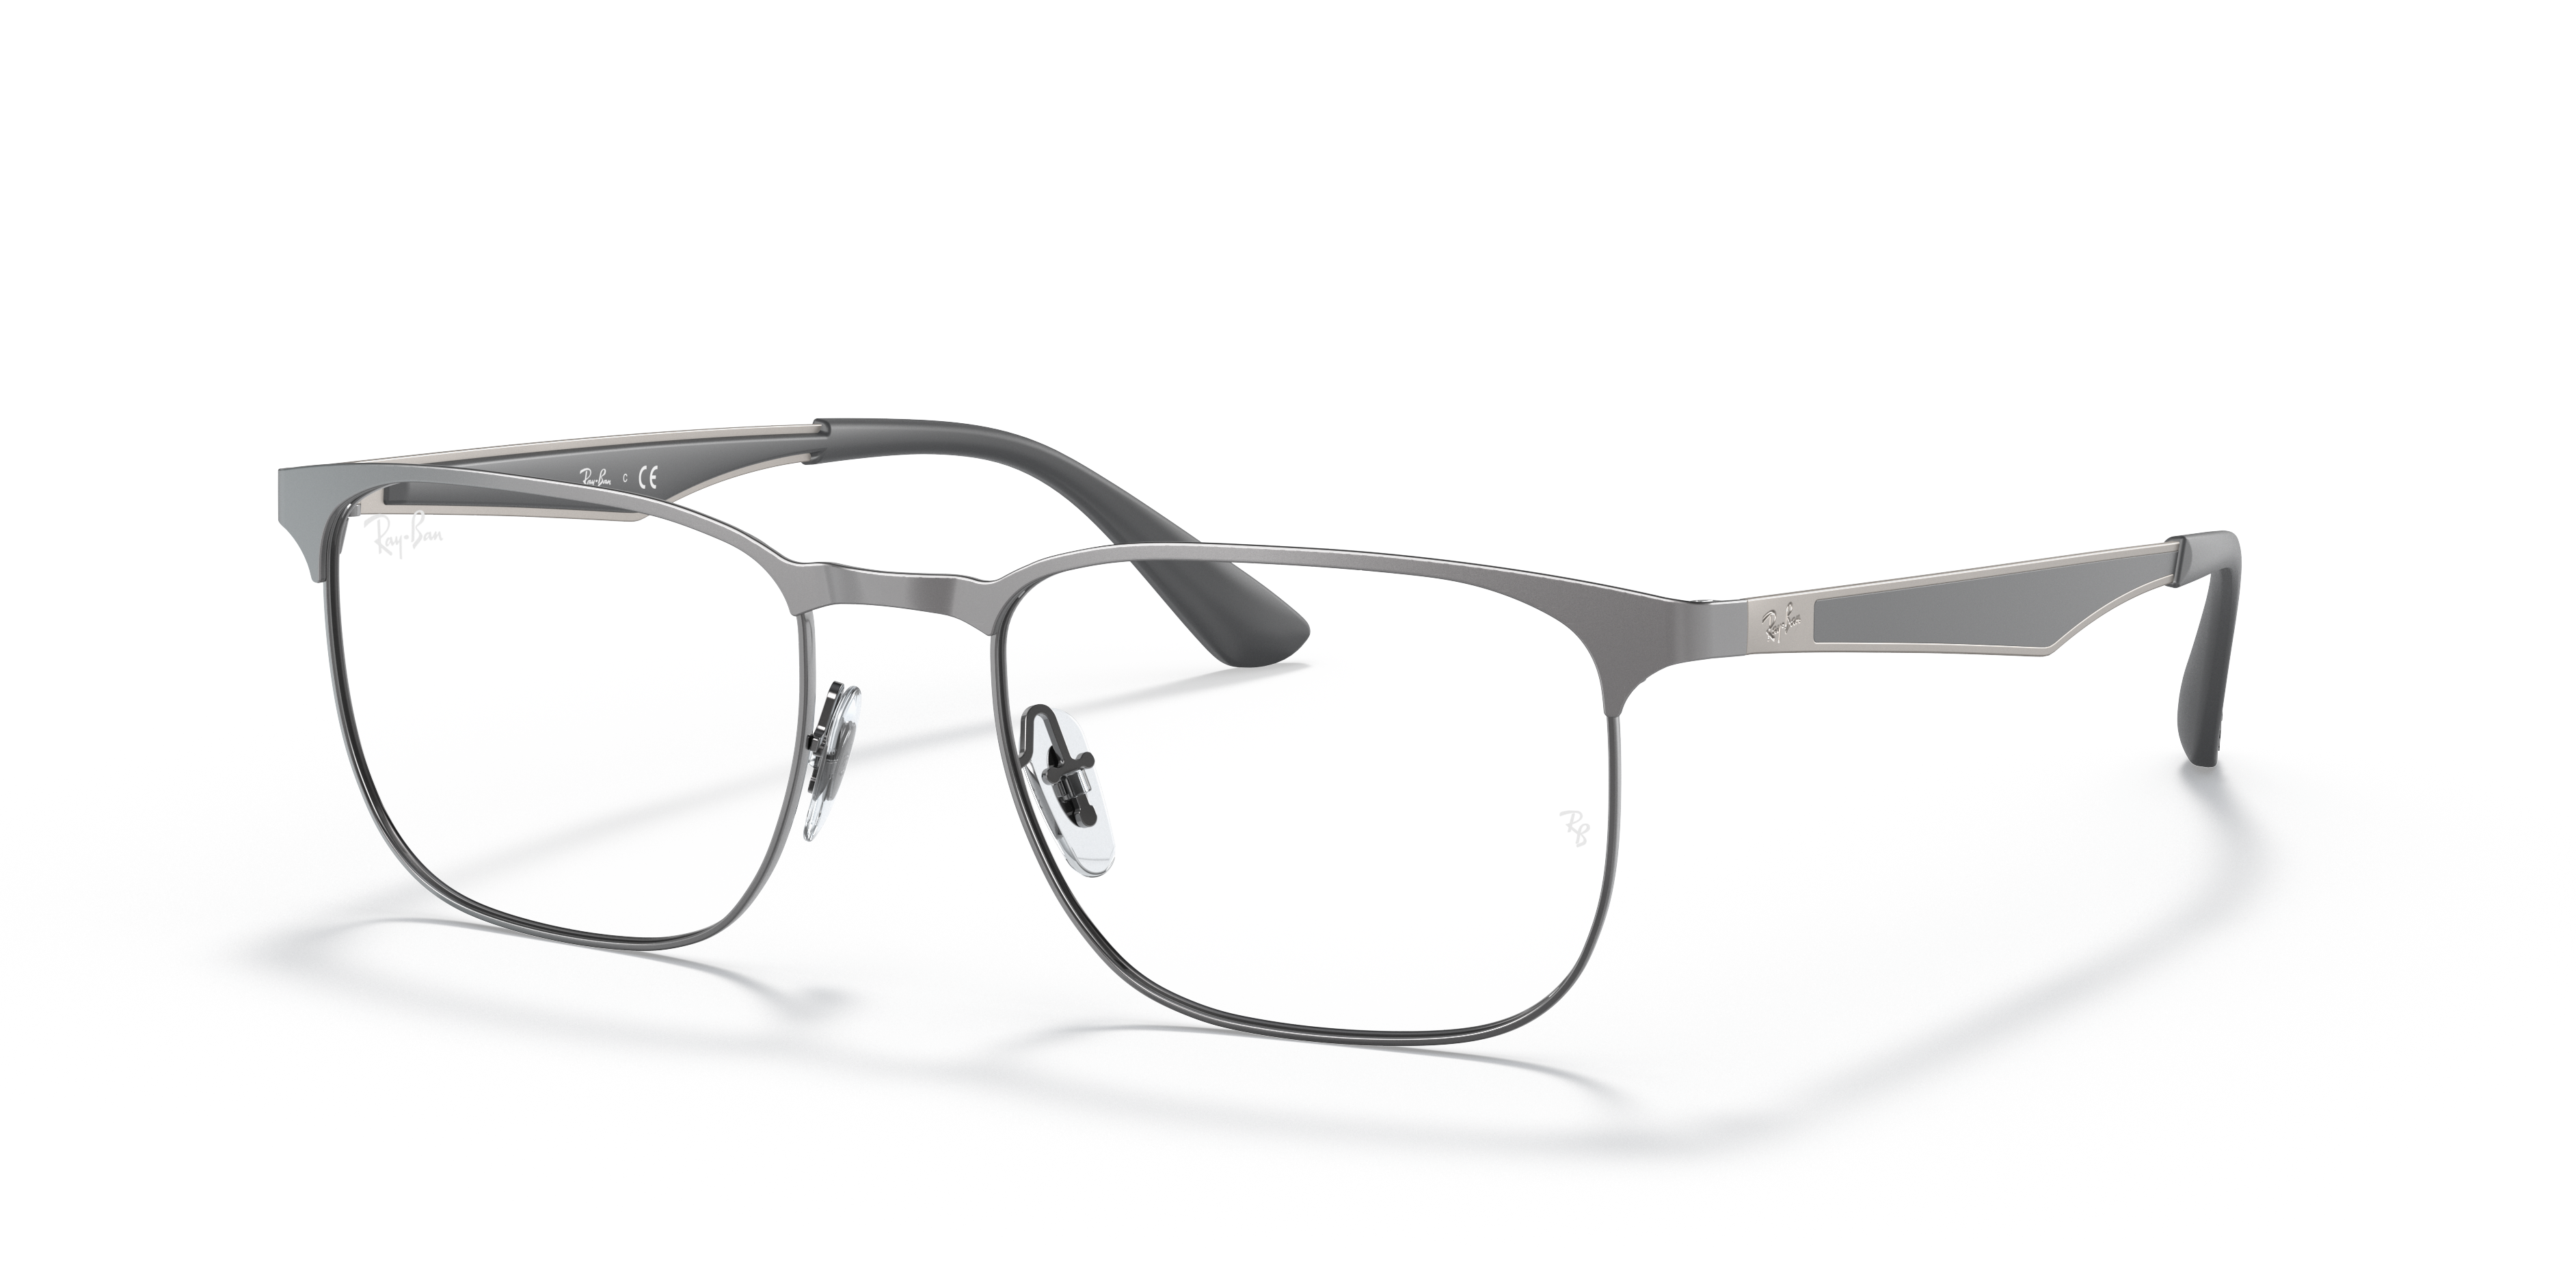 Rb6363 Optics Eyeglasses with Gunmetal Frame | Ray-Ban®